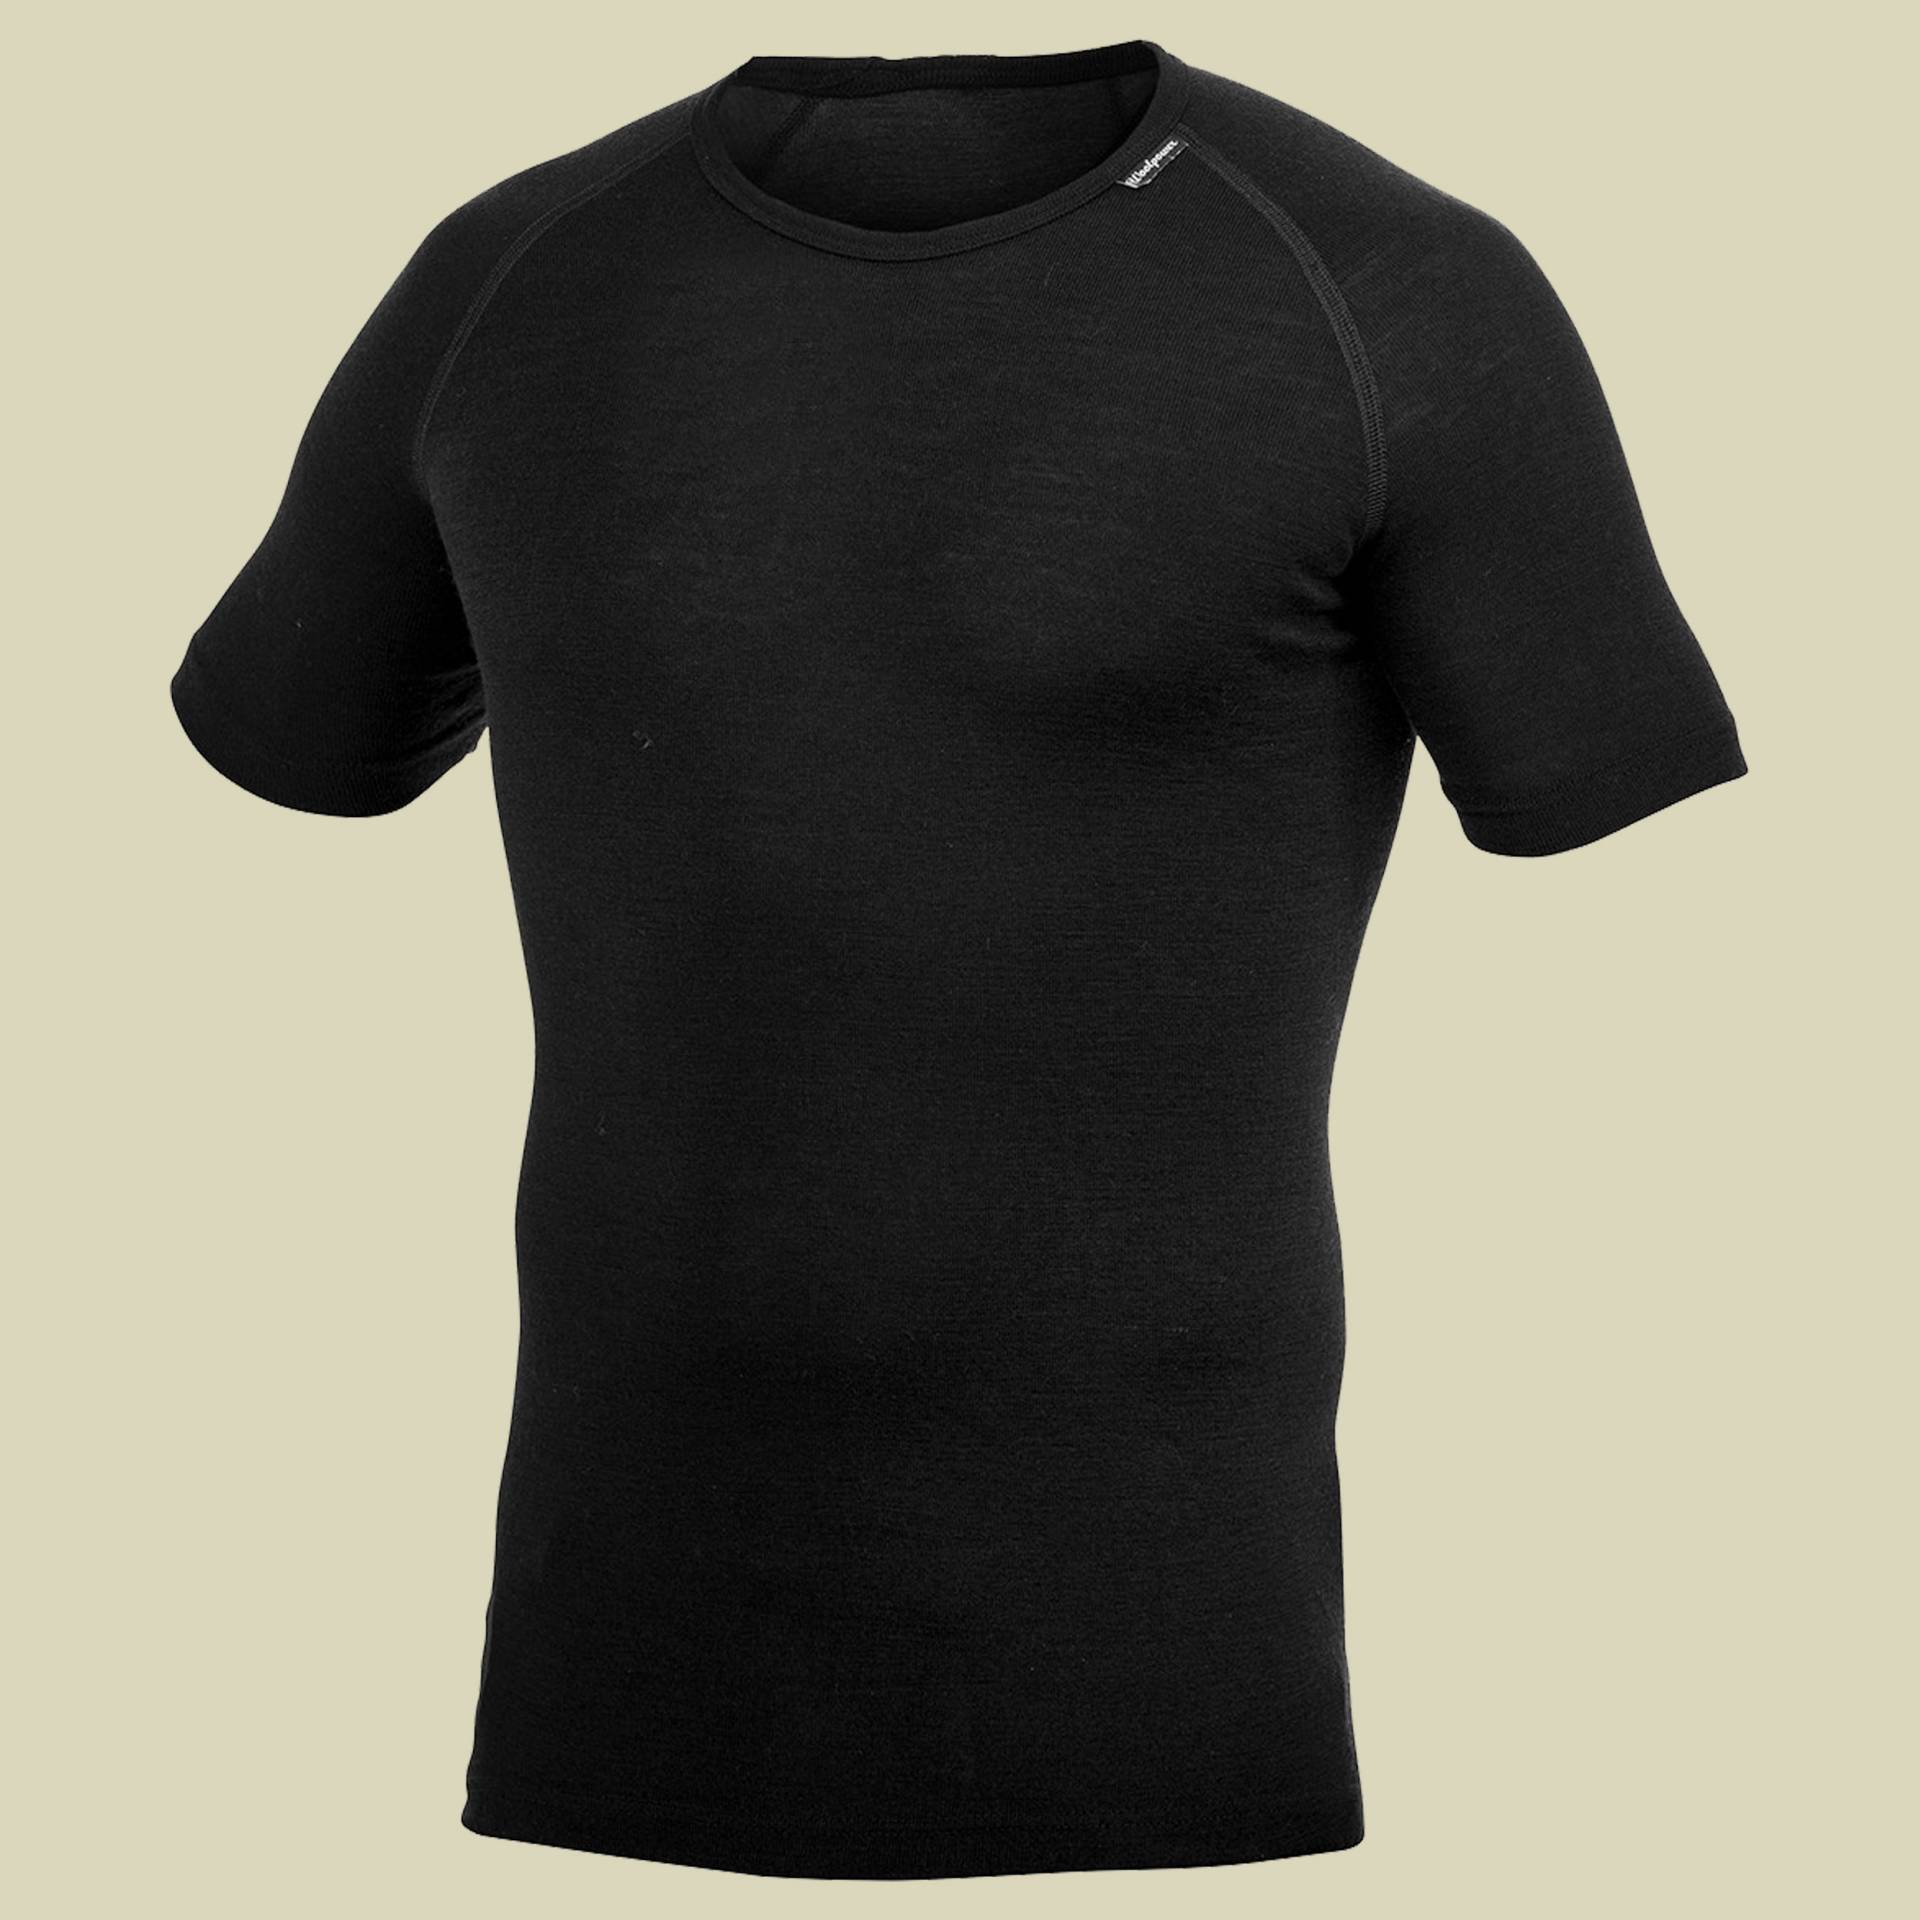 Lite T-Shirt XL schwarz - Farbe black von Woolpower